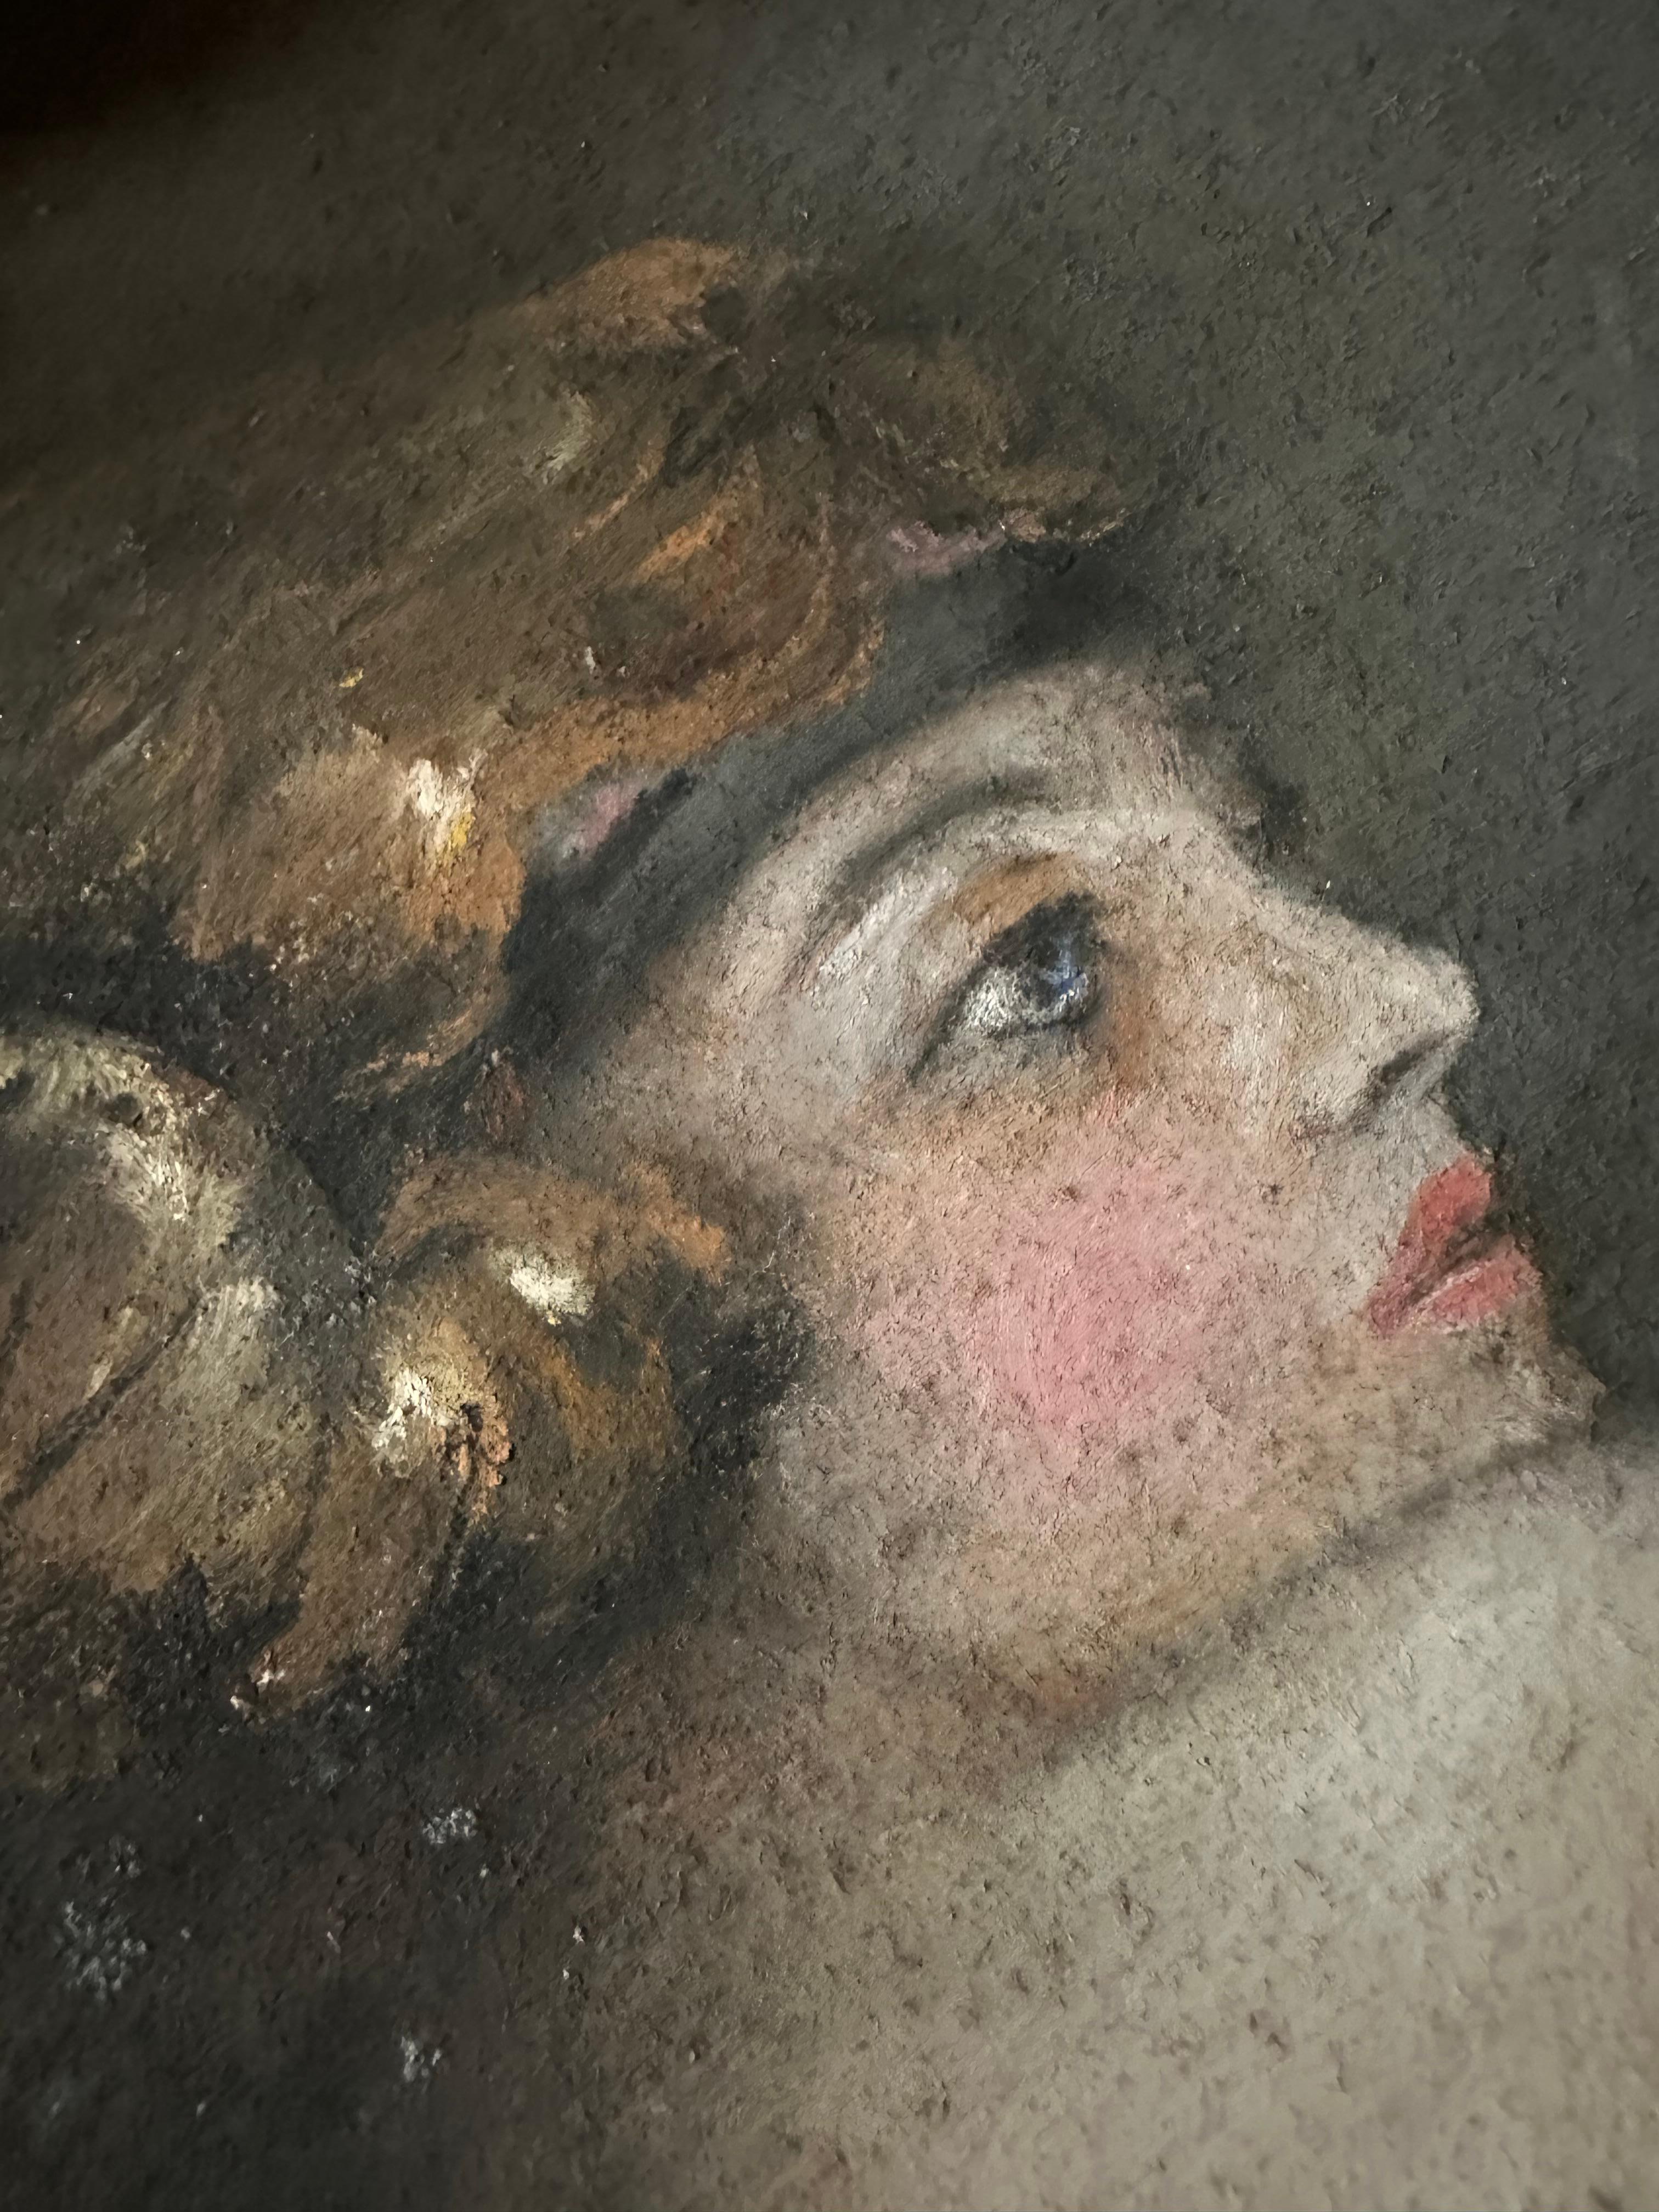 Die Zeichnung ist ein Pastell aus dem späten 19. oder frühen 20. Jahrhundert und zeigt einen weiblichen Akt, der auf einem Stuhl sitzt und eine Zigarette raucht. Sie trägt den Titel 